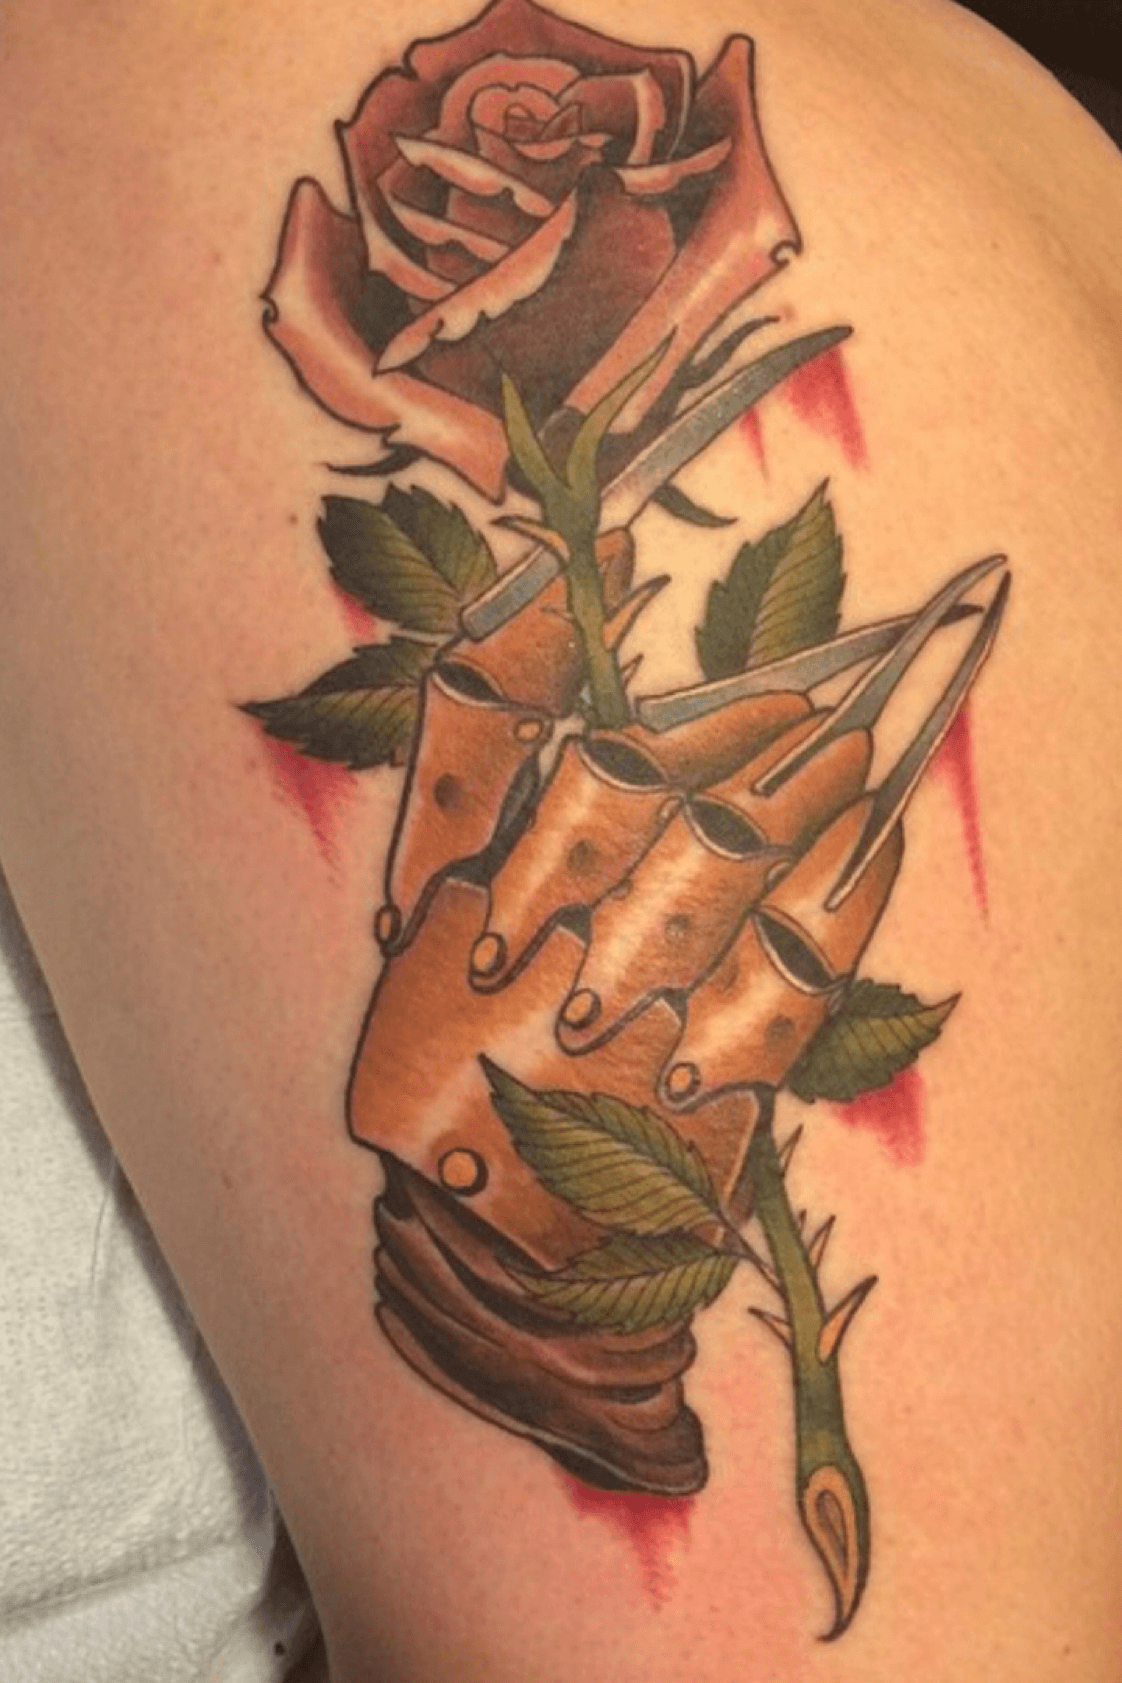 Freddy Krueger with Claw Tattoo On Shoulder